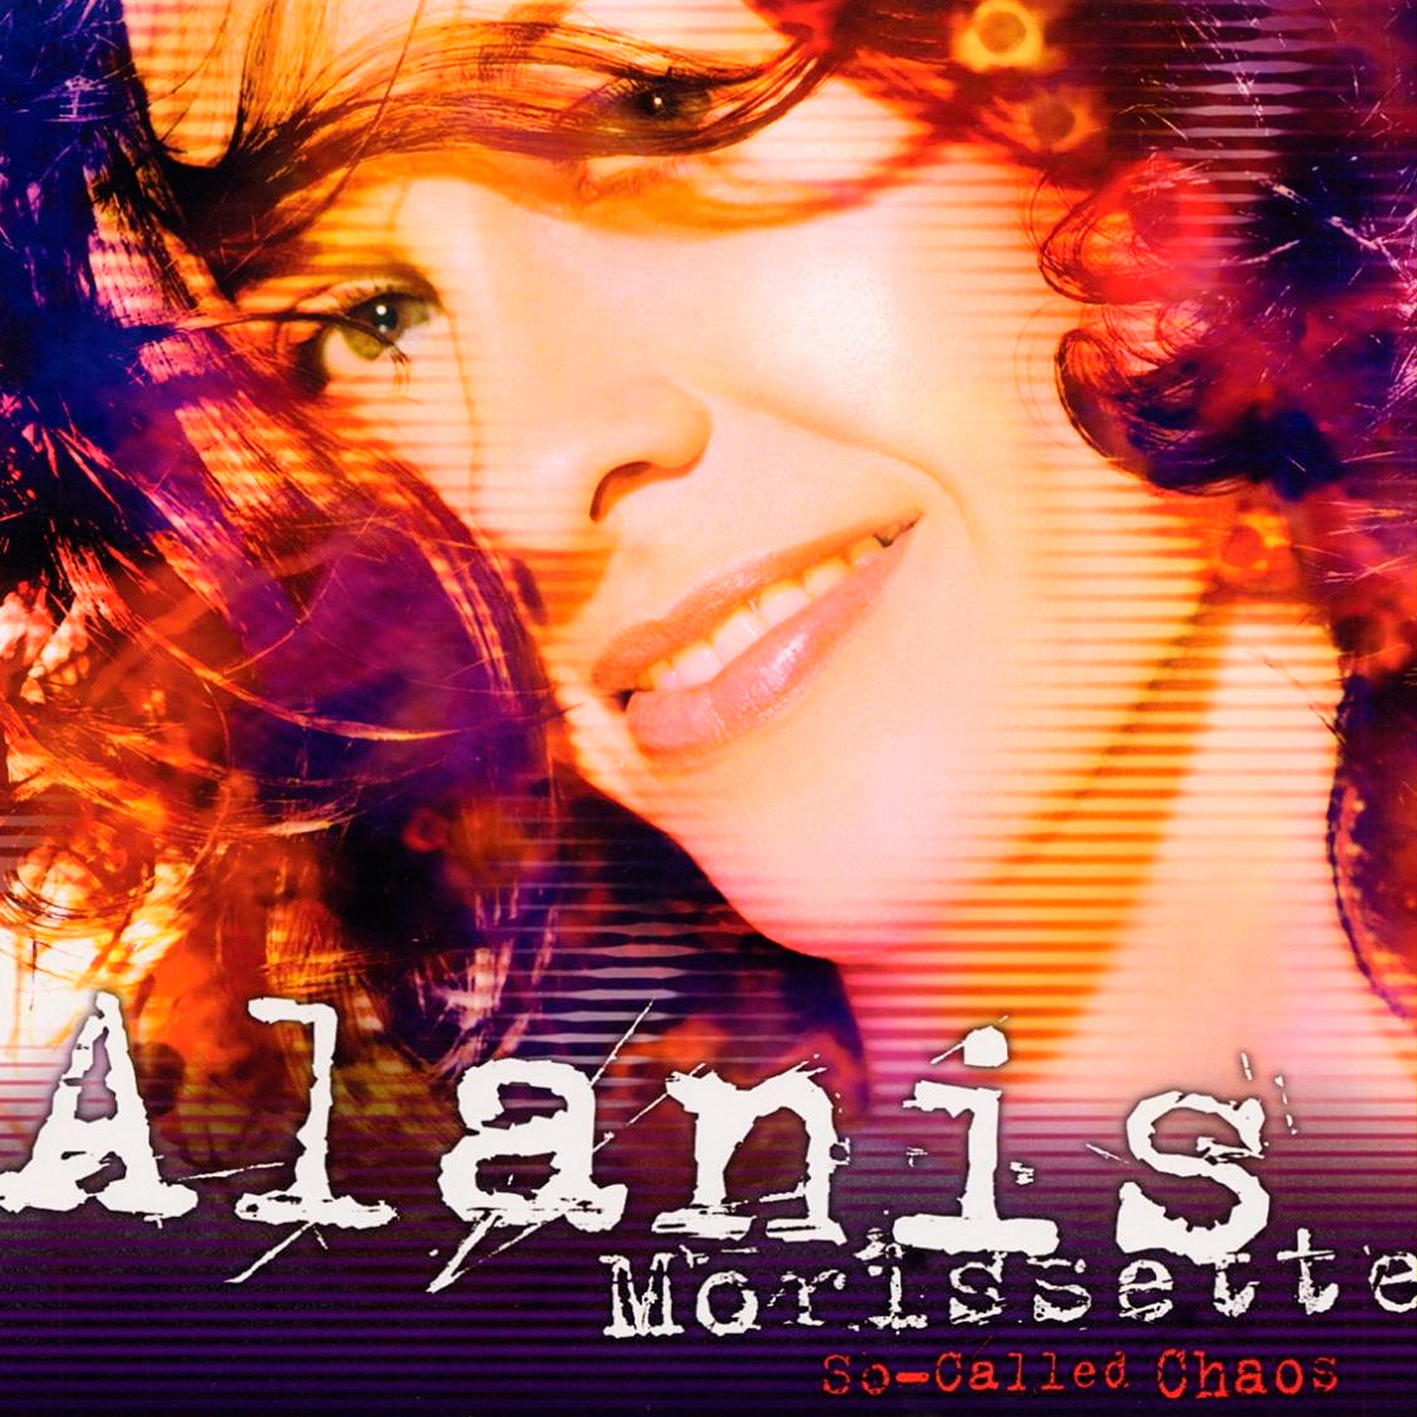 Alanis Morissette – So-Called Chaos (2004/2015) [HDTracks FLAC 24bit/96kHz]